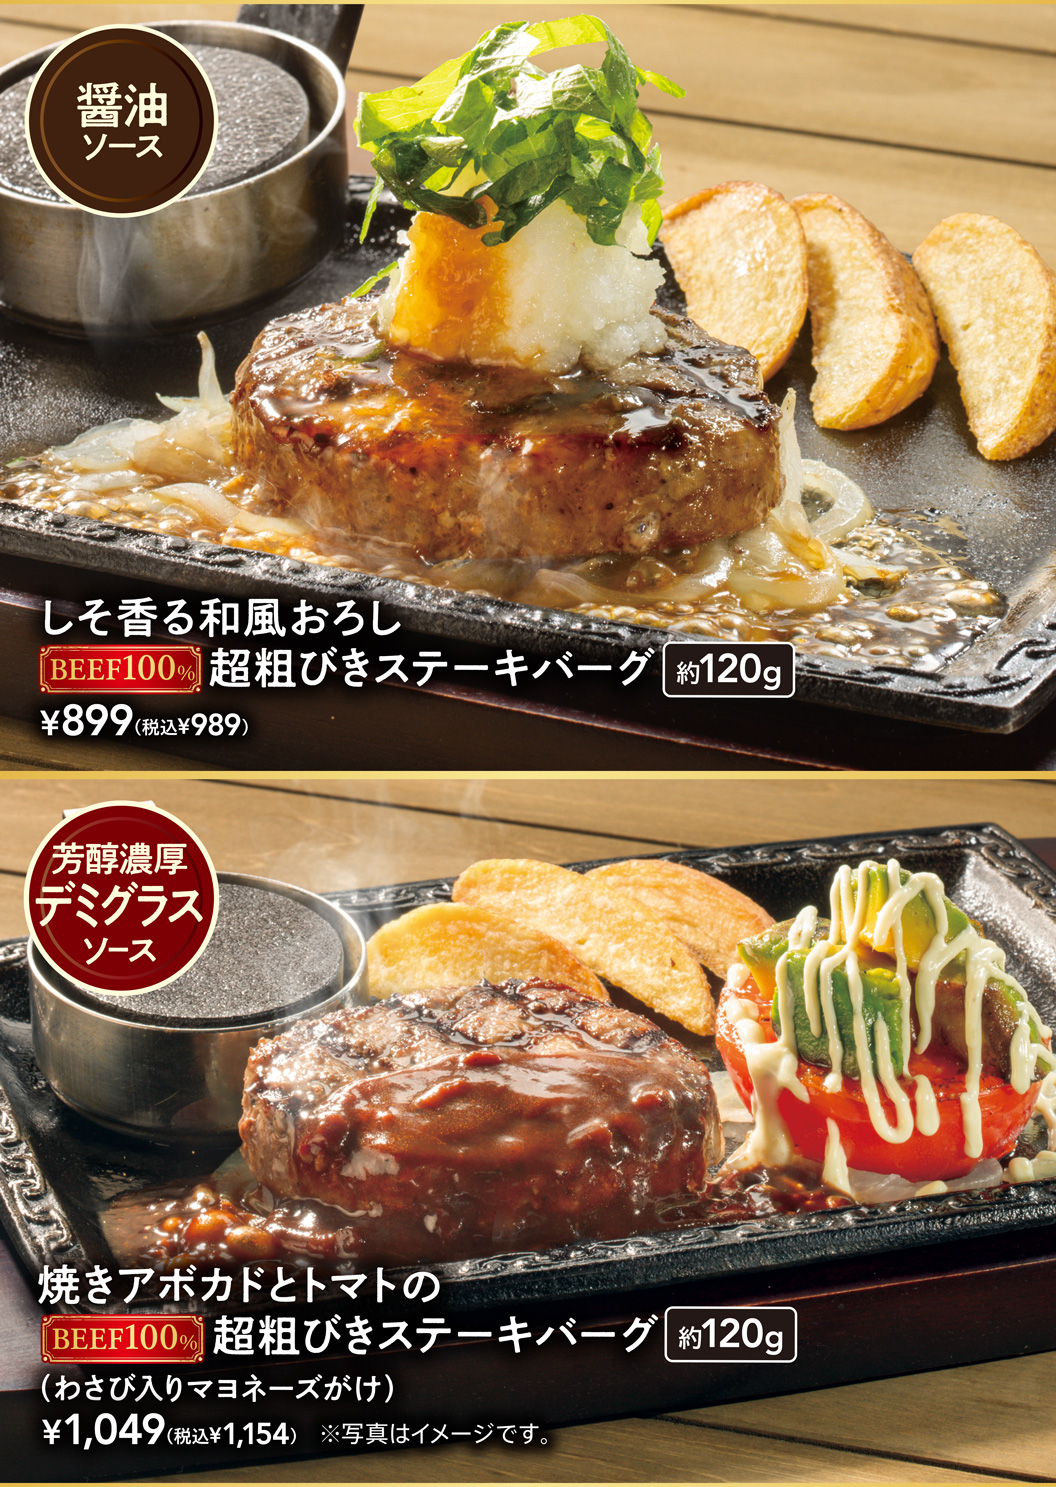 시소 향기로운 일본식 내림 초 거칠기 스테이크 버그 구운 아보카도와 토마토의 초 거칠기 스테이크 버그